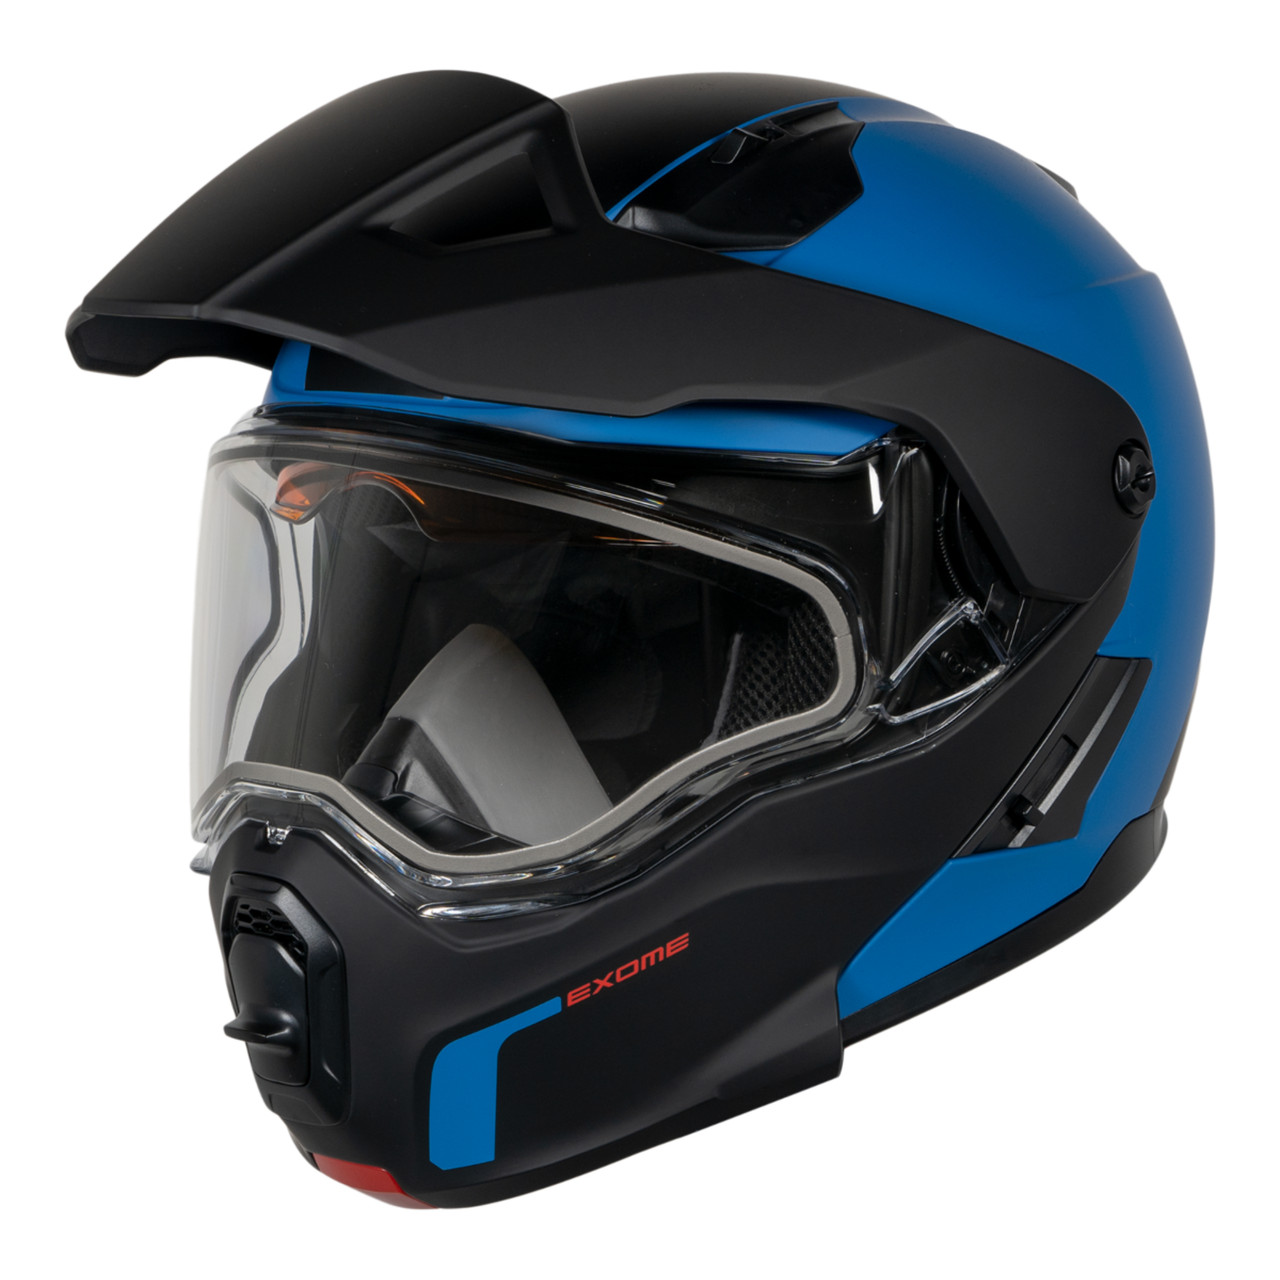 Ski-Doo New OEM Exome Sport Helmet (DOT), Unisex X-Small, 9290360282